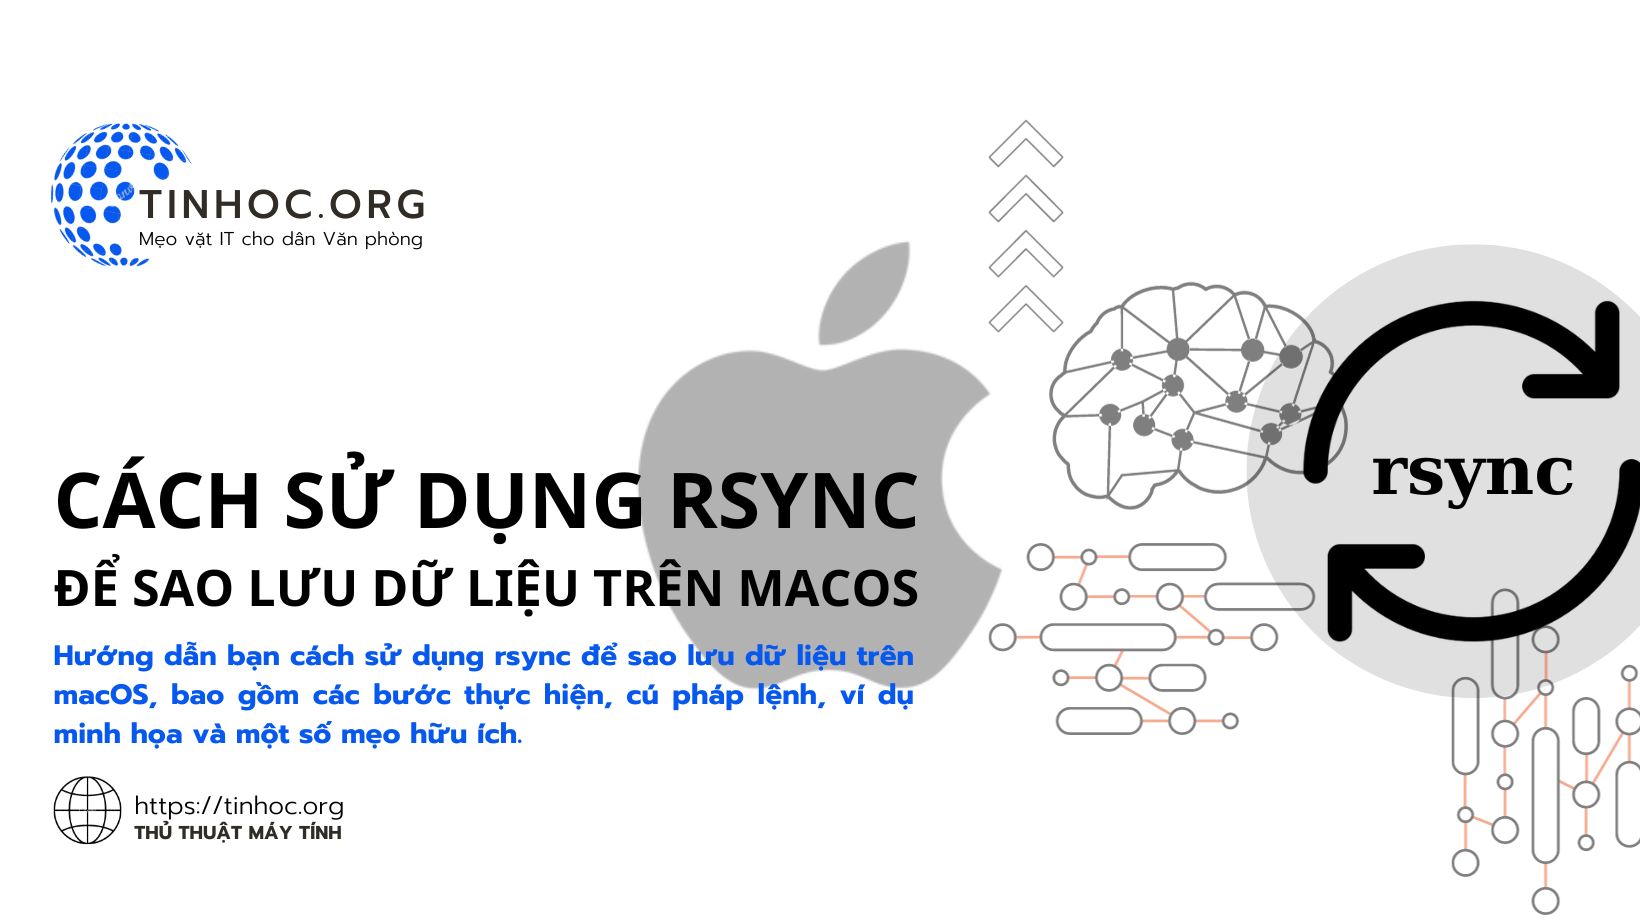 Hướng dẫn bạn cách sử dụng rsync để sao lưu dữ liệu trên macOS, bao gồm các bước thực hiện, cú pháp lệnh, ví dụ minh họa và một số mẹo hữu ích.